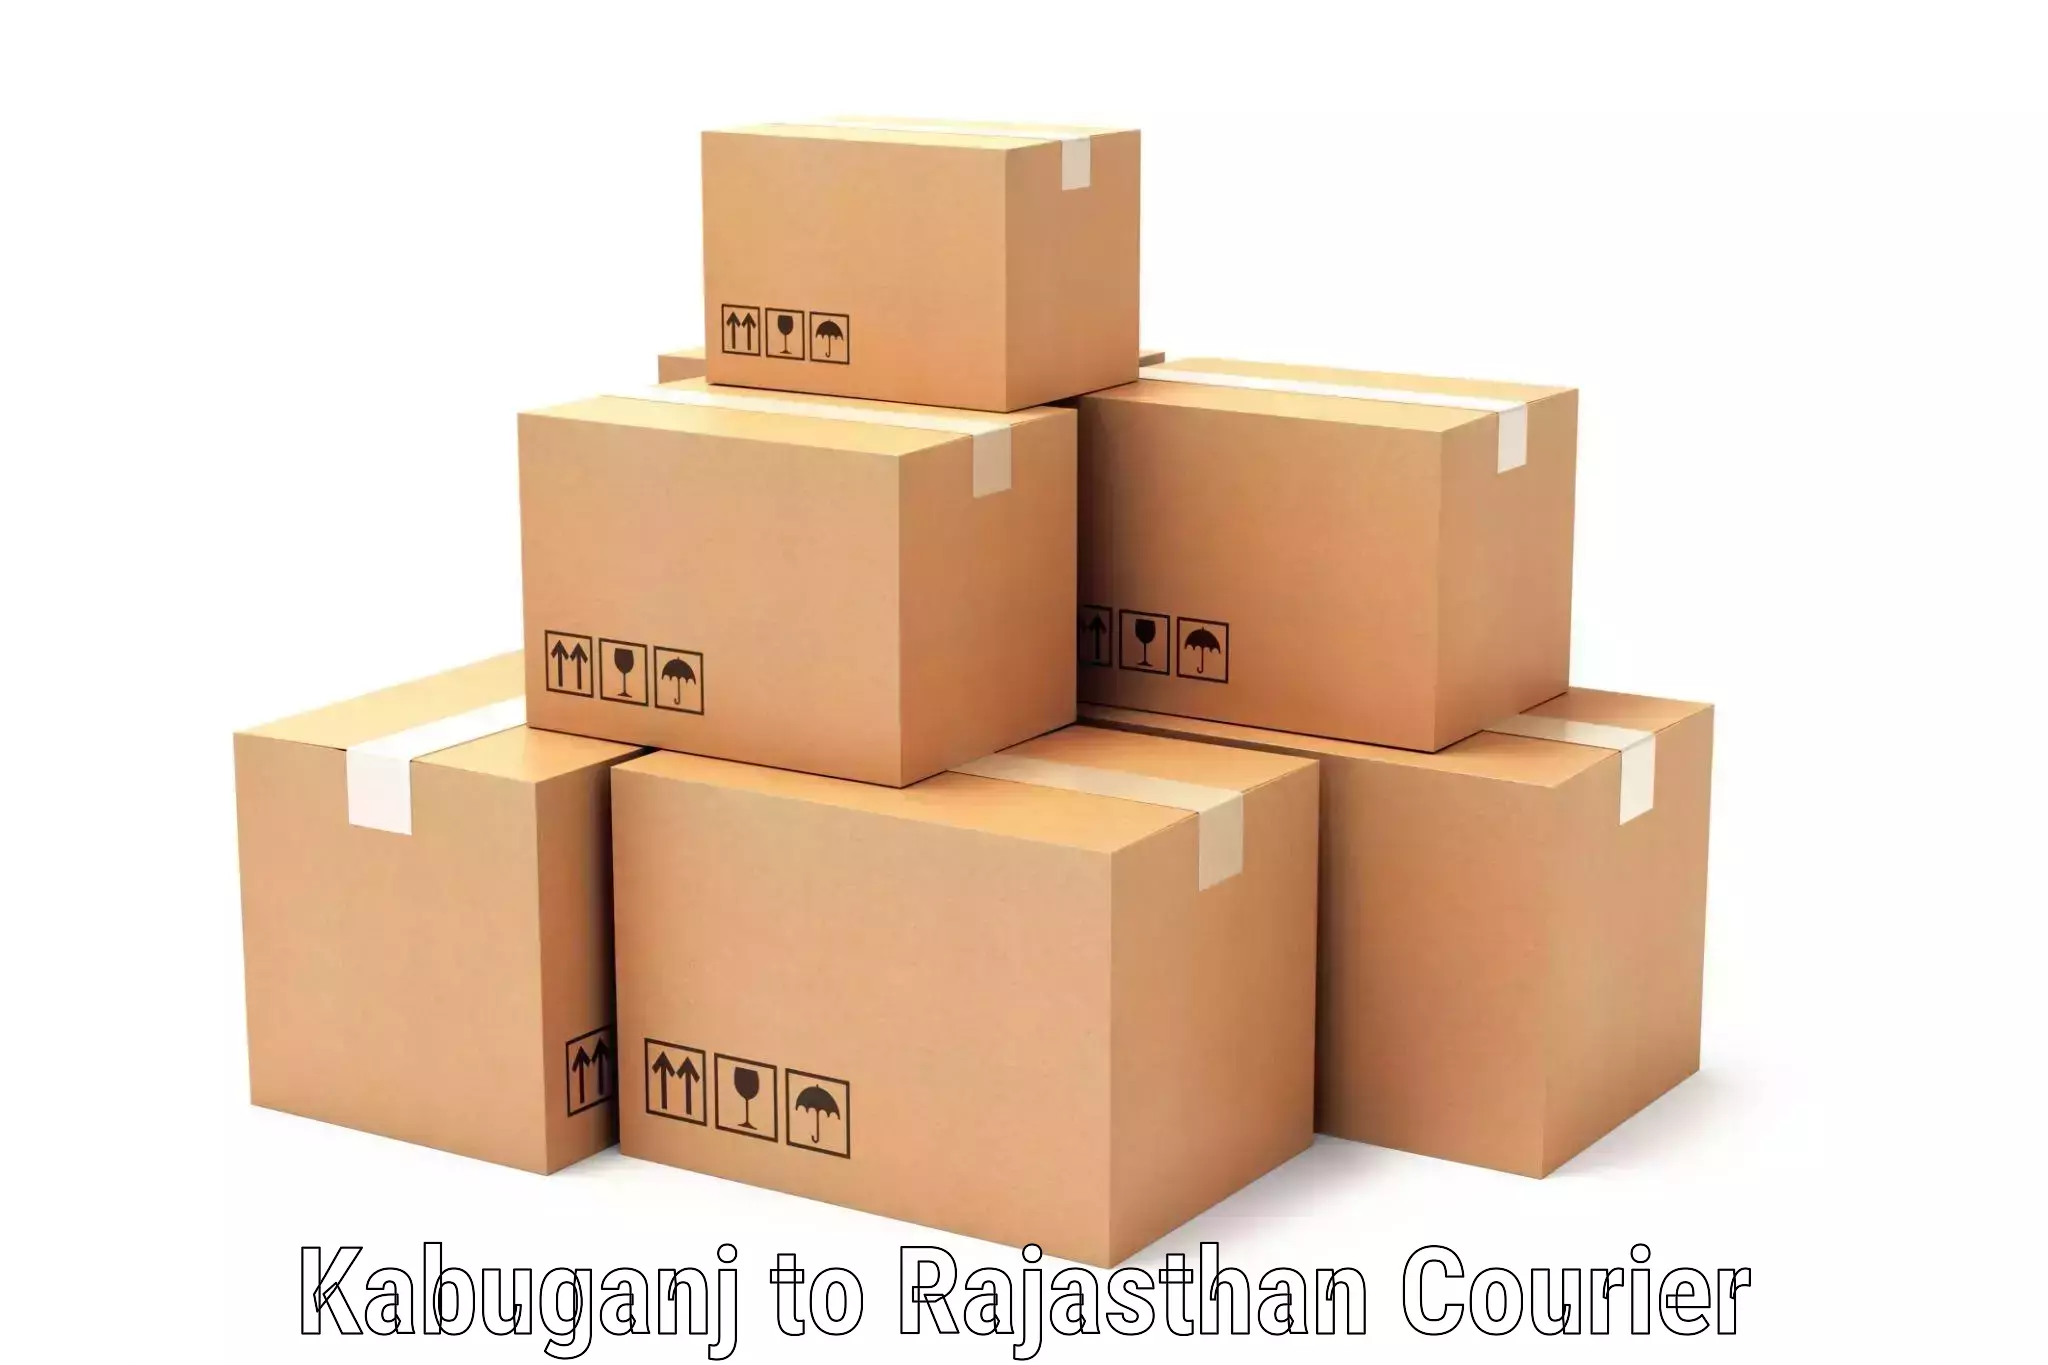 Professional parcel services Kabuganj to Pilibanga